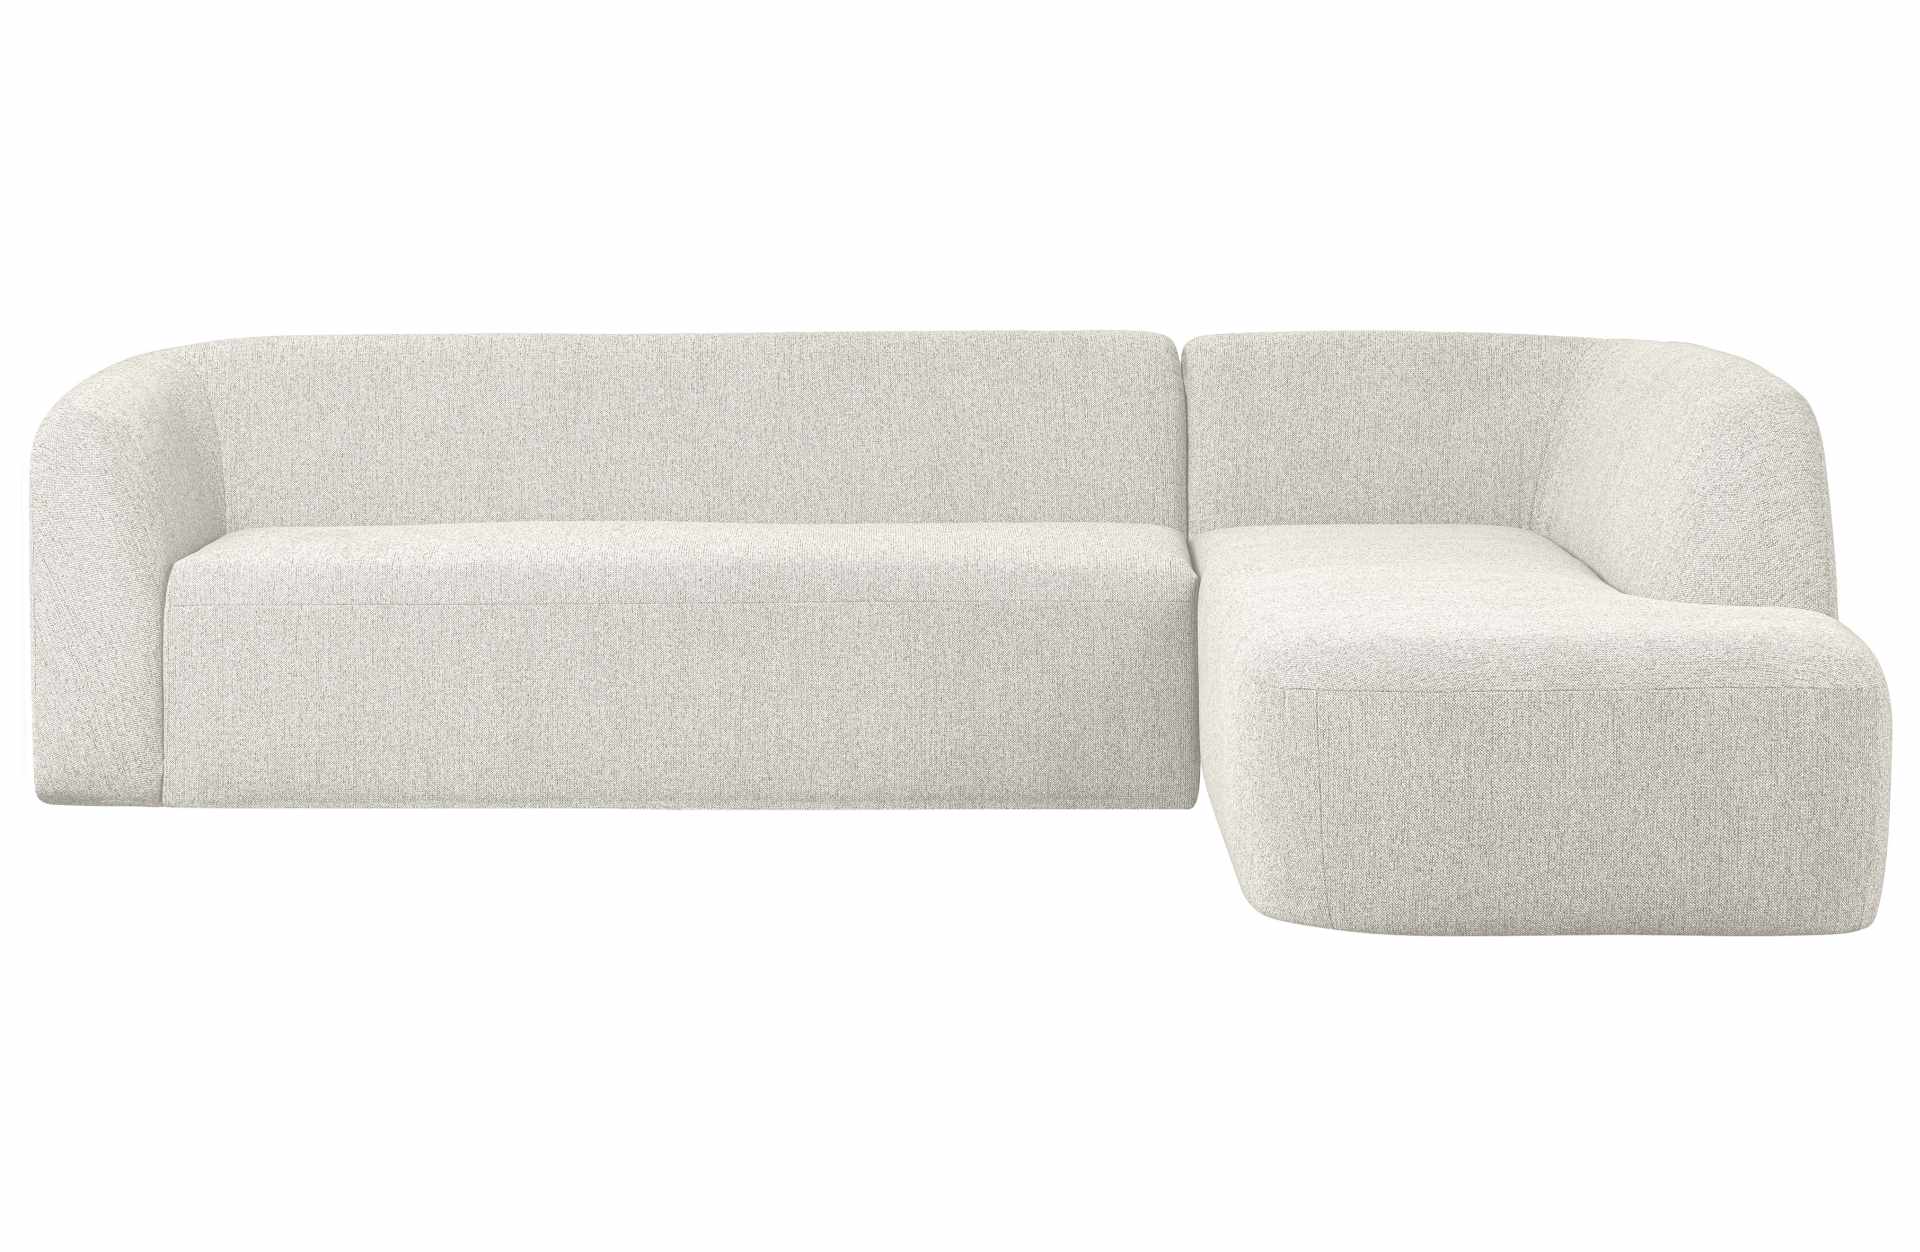 Das Ecksofa Sloping wurde aus bequemen Stoff gefertigt, welcher einen Weißen Farbton besitzt. Das Sofa ist ein echter Hingucker für dein Zuhause, denn es hat ein modernes Design, welches zu jeder Inneneinrichtung passt.